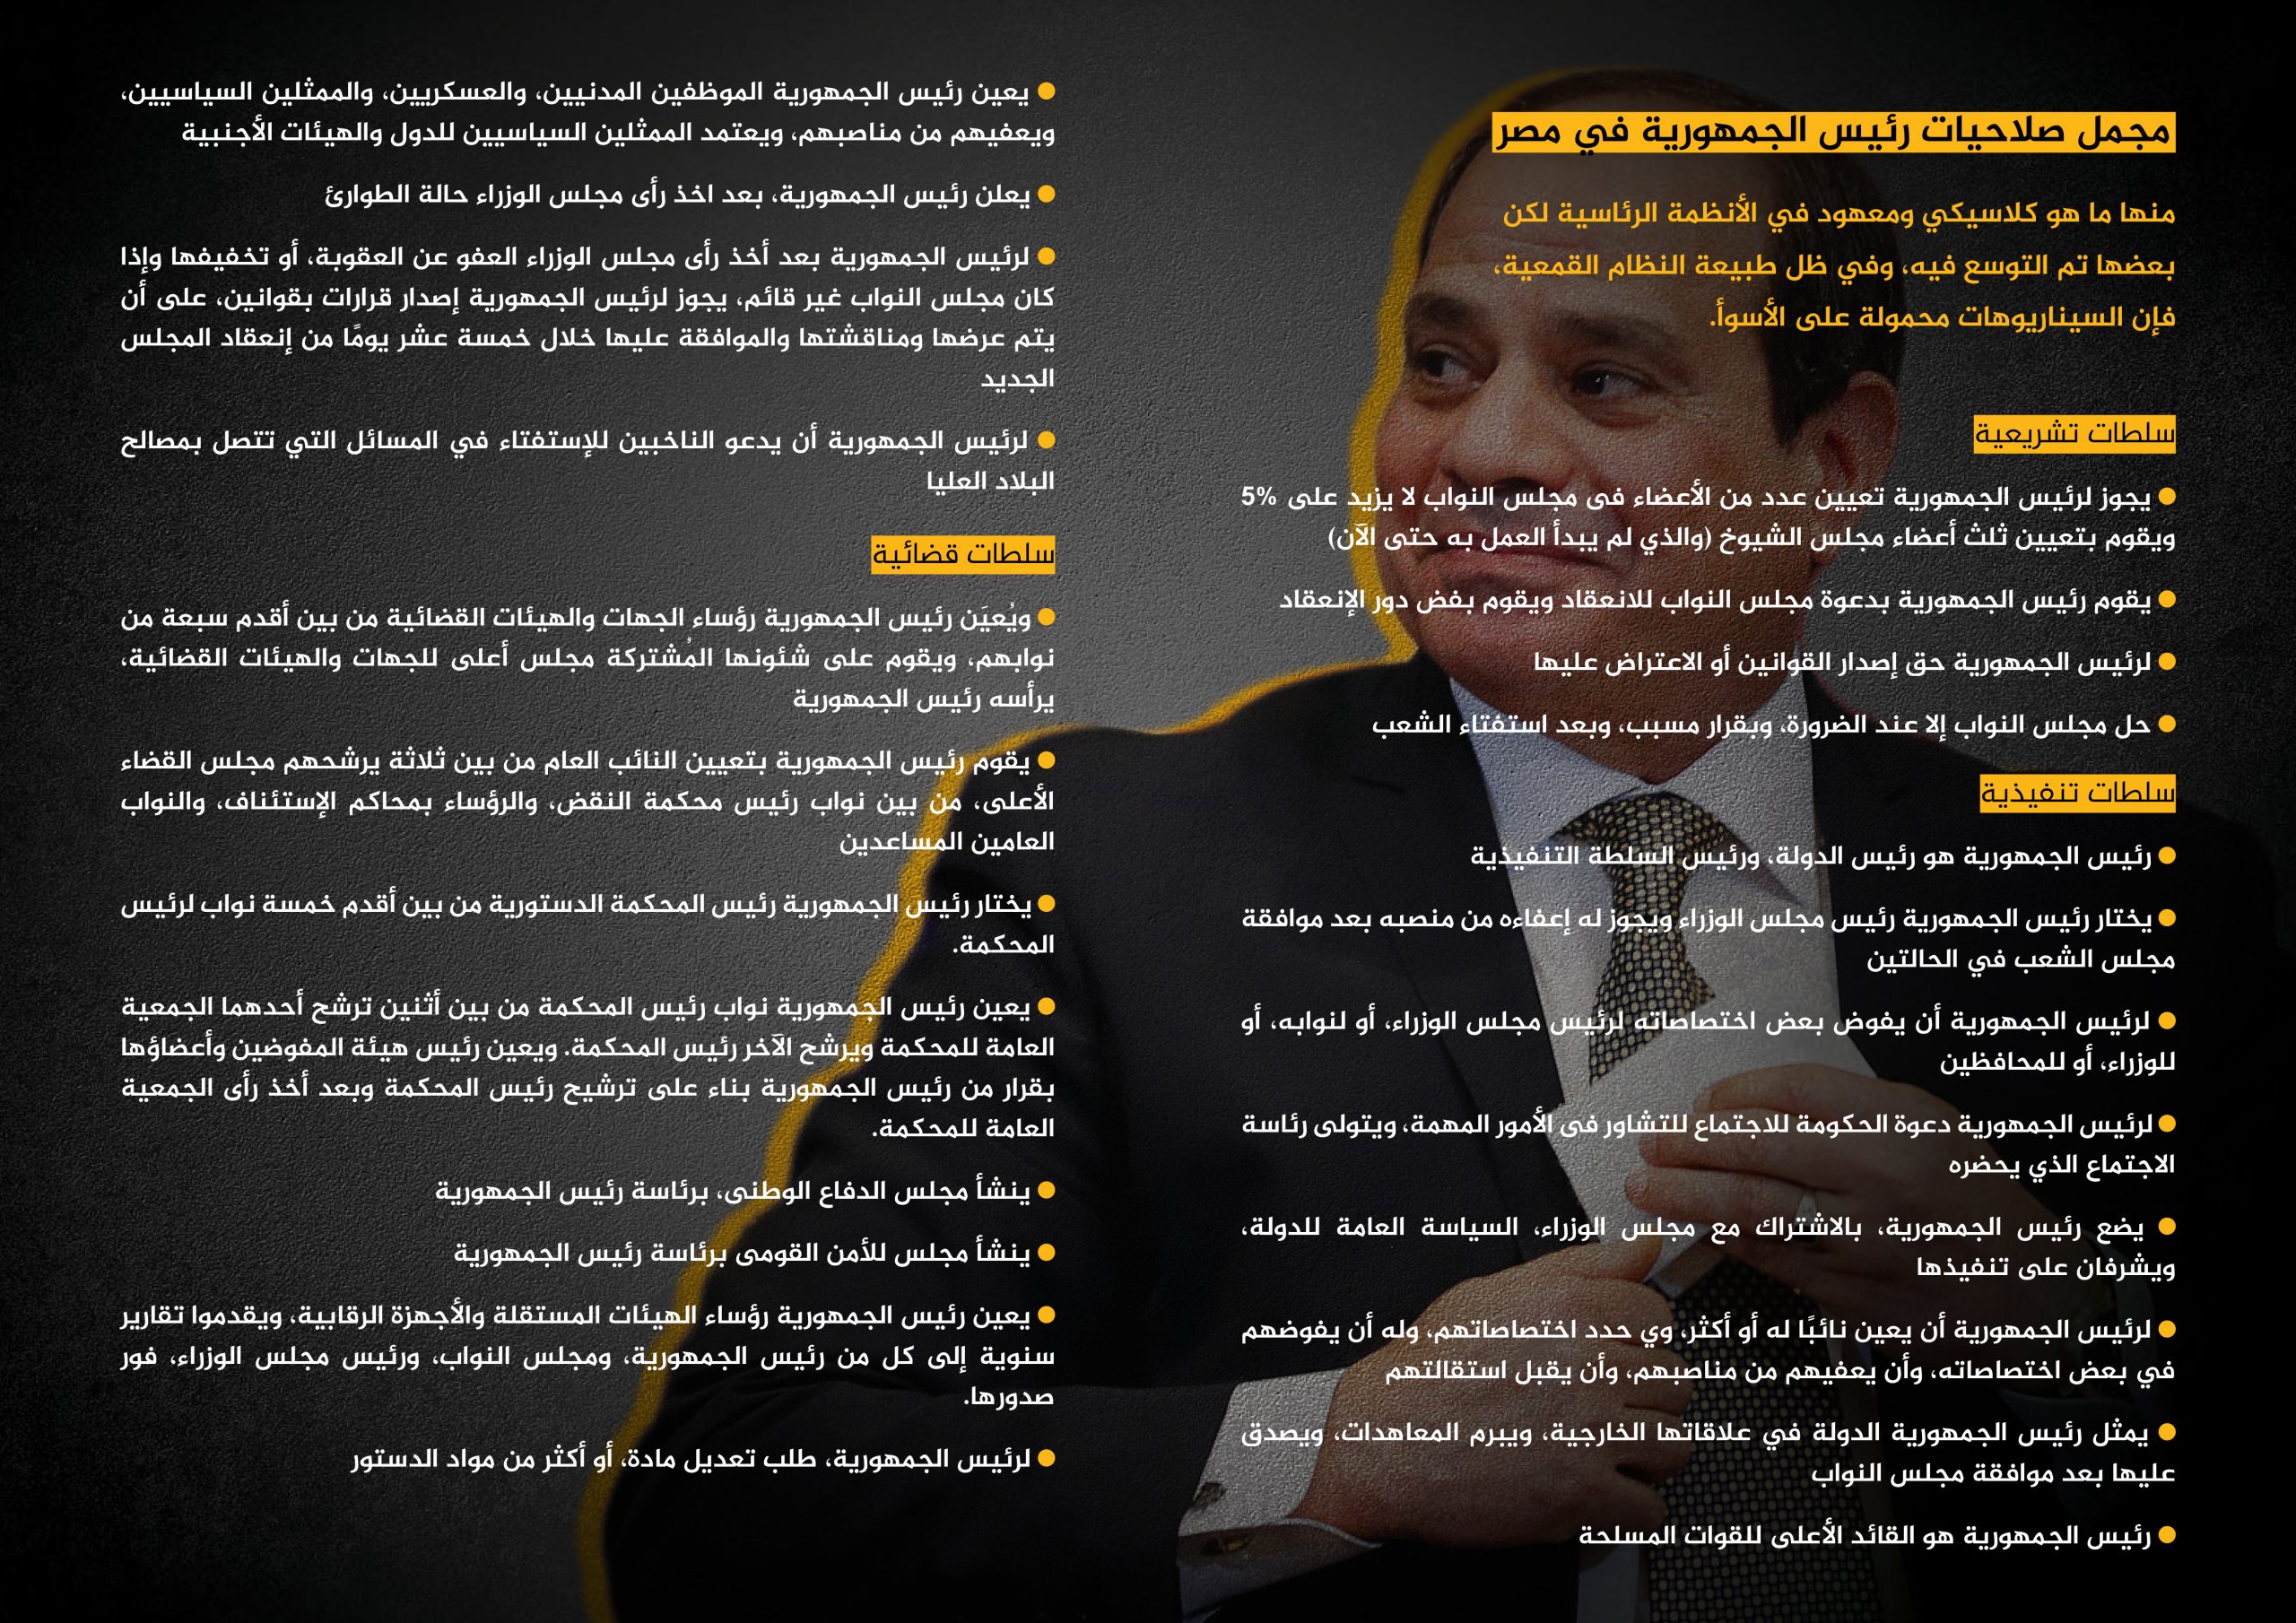 تطور السياسات والتشريعات املتعلقة بحقوق الإنسان والإنتقال الديمقراطي في مصر (التقرير نصف السنوي )